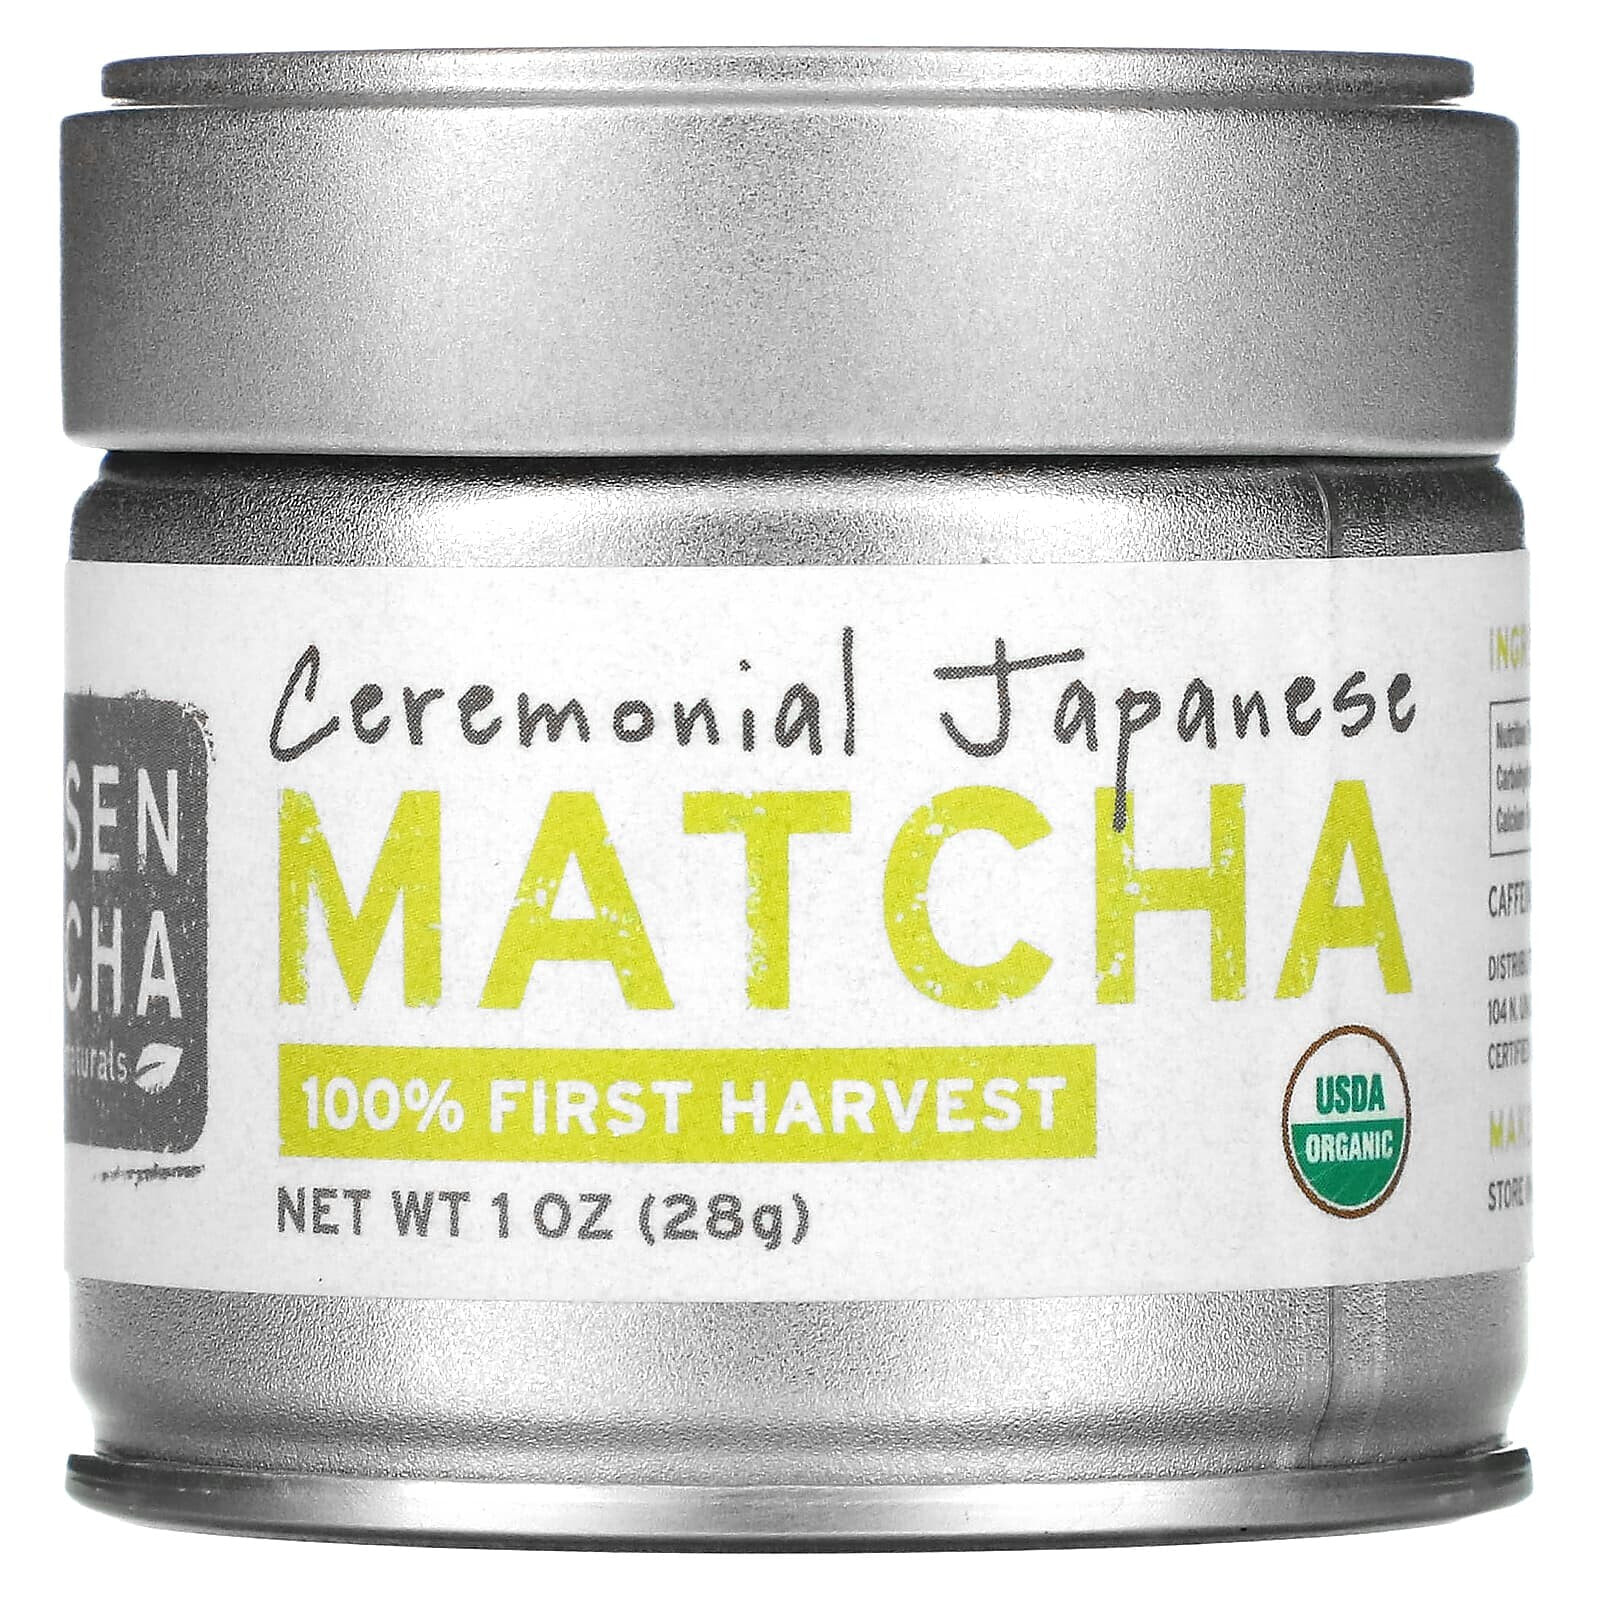 Sencha Naturals, Everyday Matcha, Japanese Green Tea Powder, 4 oz (113 g)